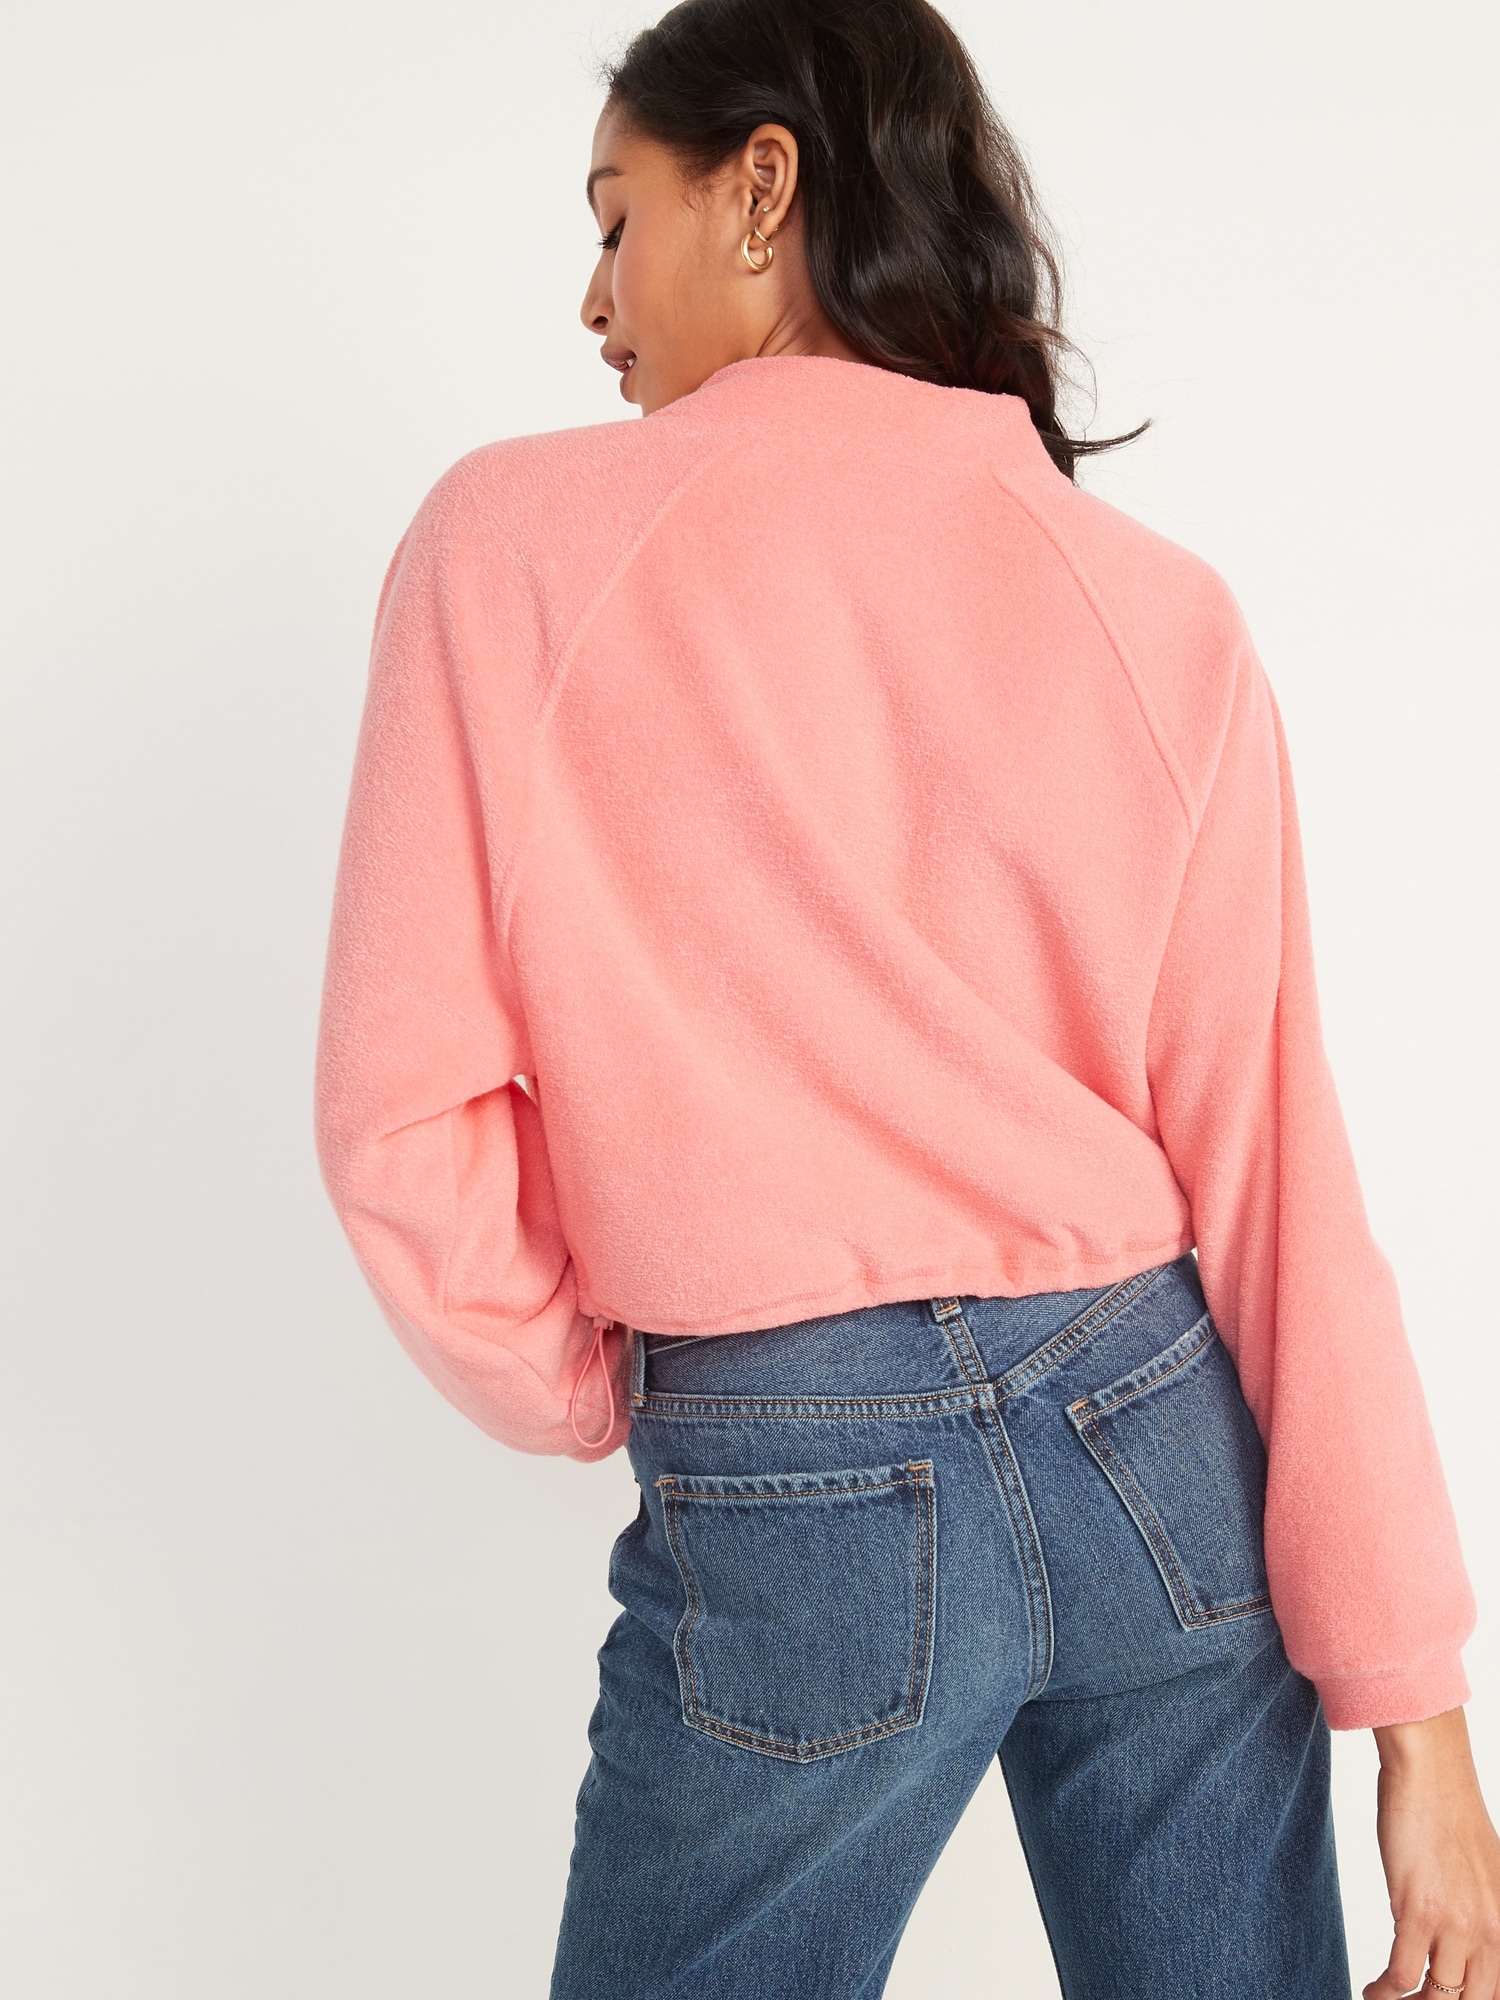 Long-Sleeve Quarter-Zip Oversized Textured Sweatshirt for Women | Old Navy